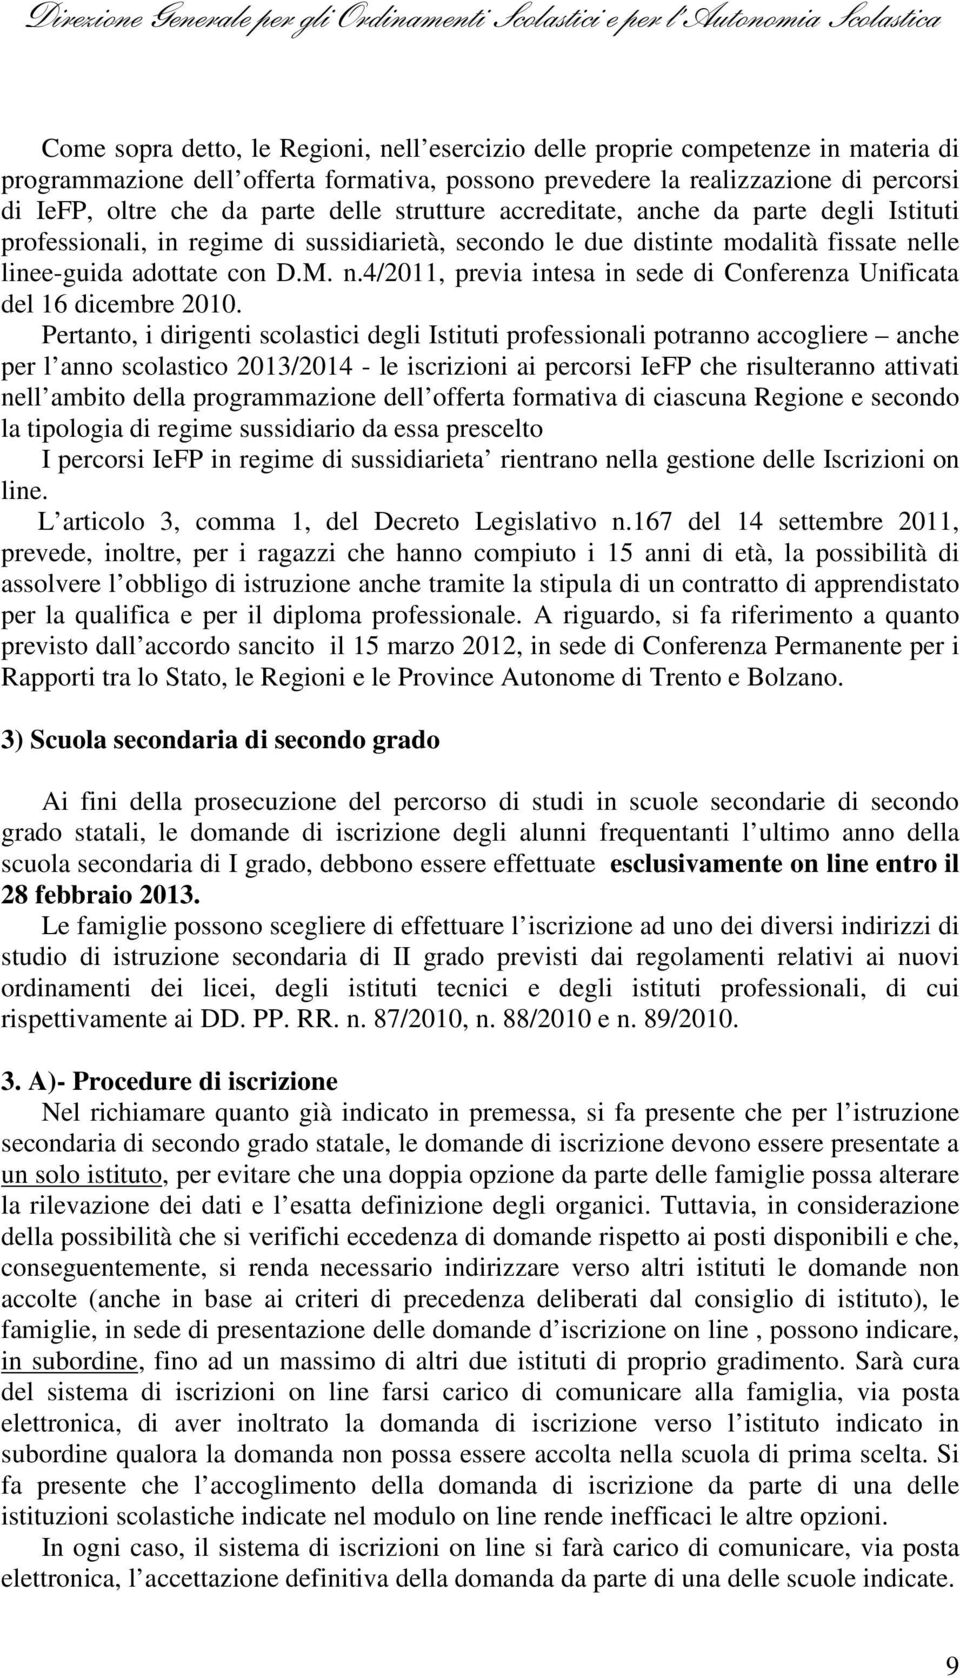 lle linee-guida adottate con D.M. n.4/2011, previa intesa in sede di Conferenza Unificata del 16 dicembre 2010.